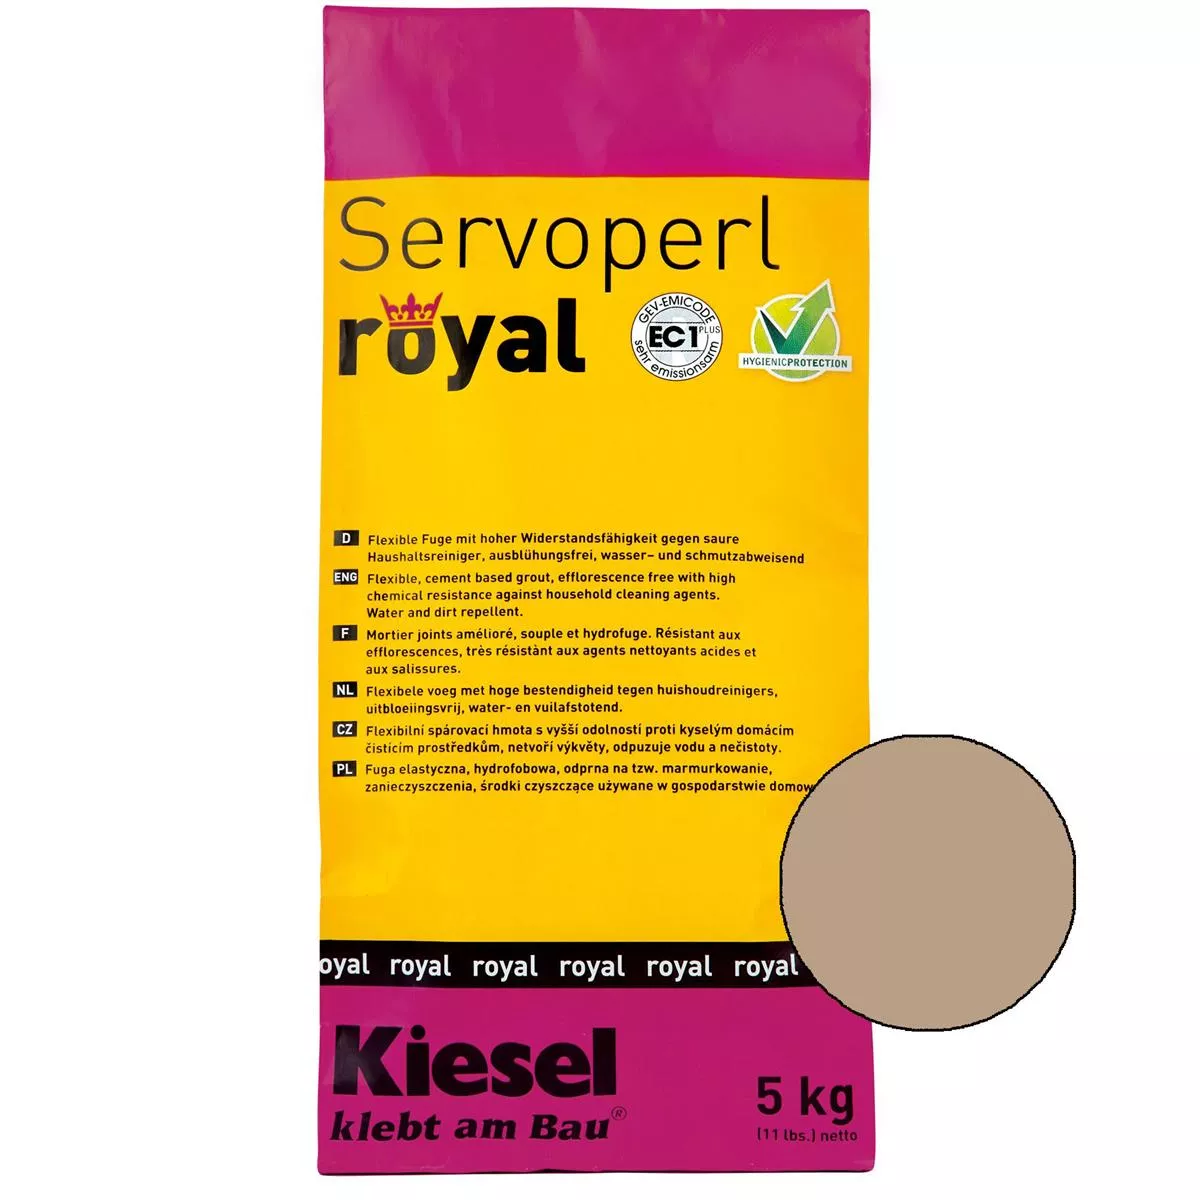 Kiesel Servoperl royal - смес за фуги - 5 кг пустинен пясък